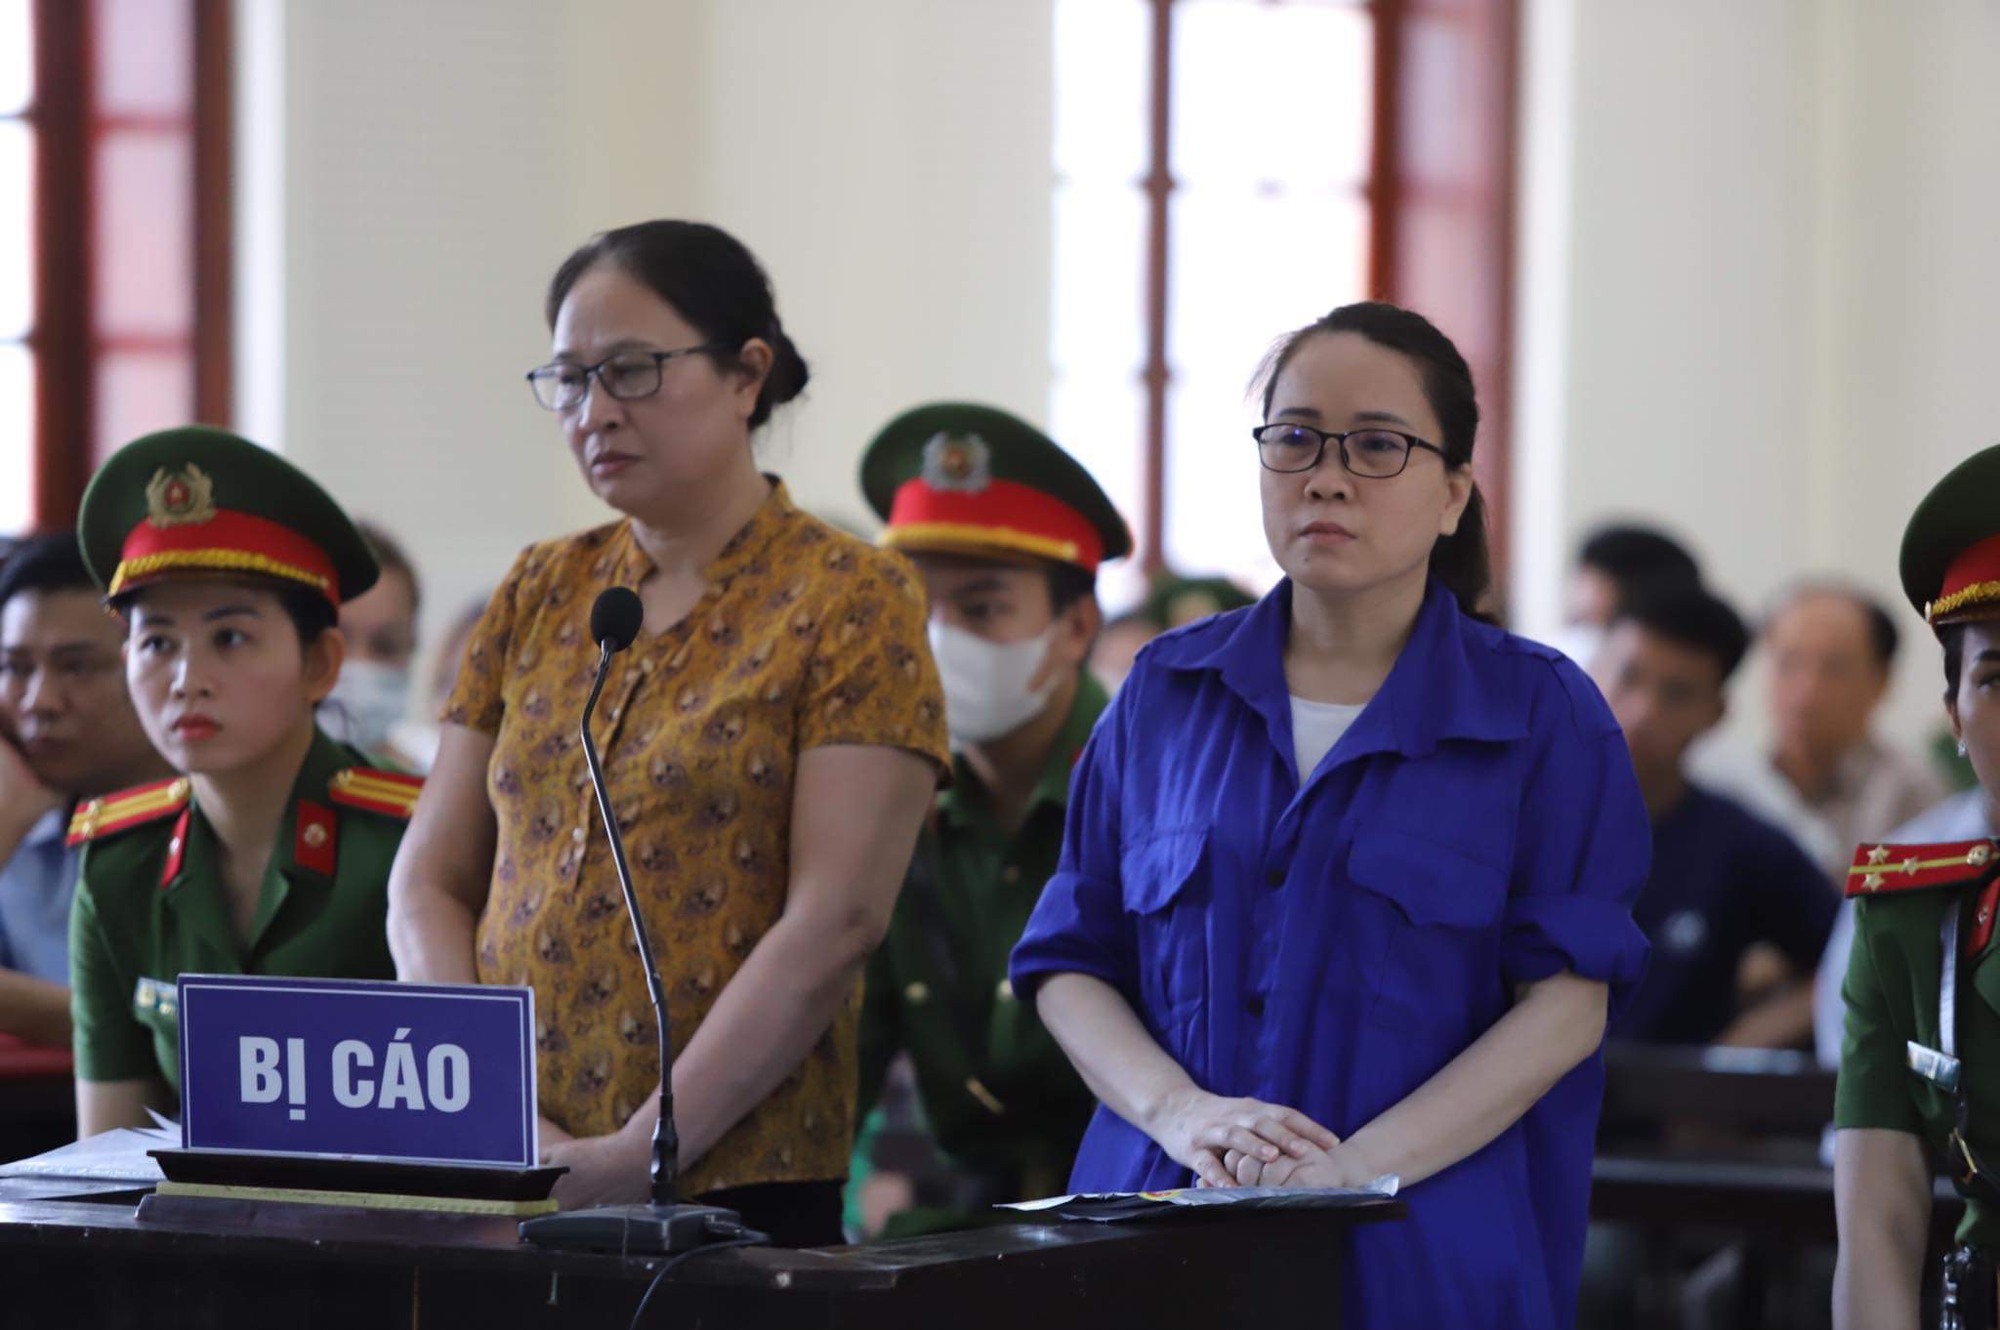 Bà Lê Thị Dung kêu oan tại tòa, cơ sở nào để giảm hình phạt như bản án phúc thẩm?